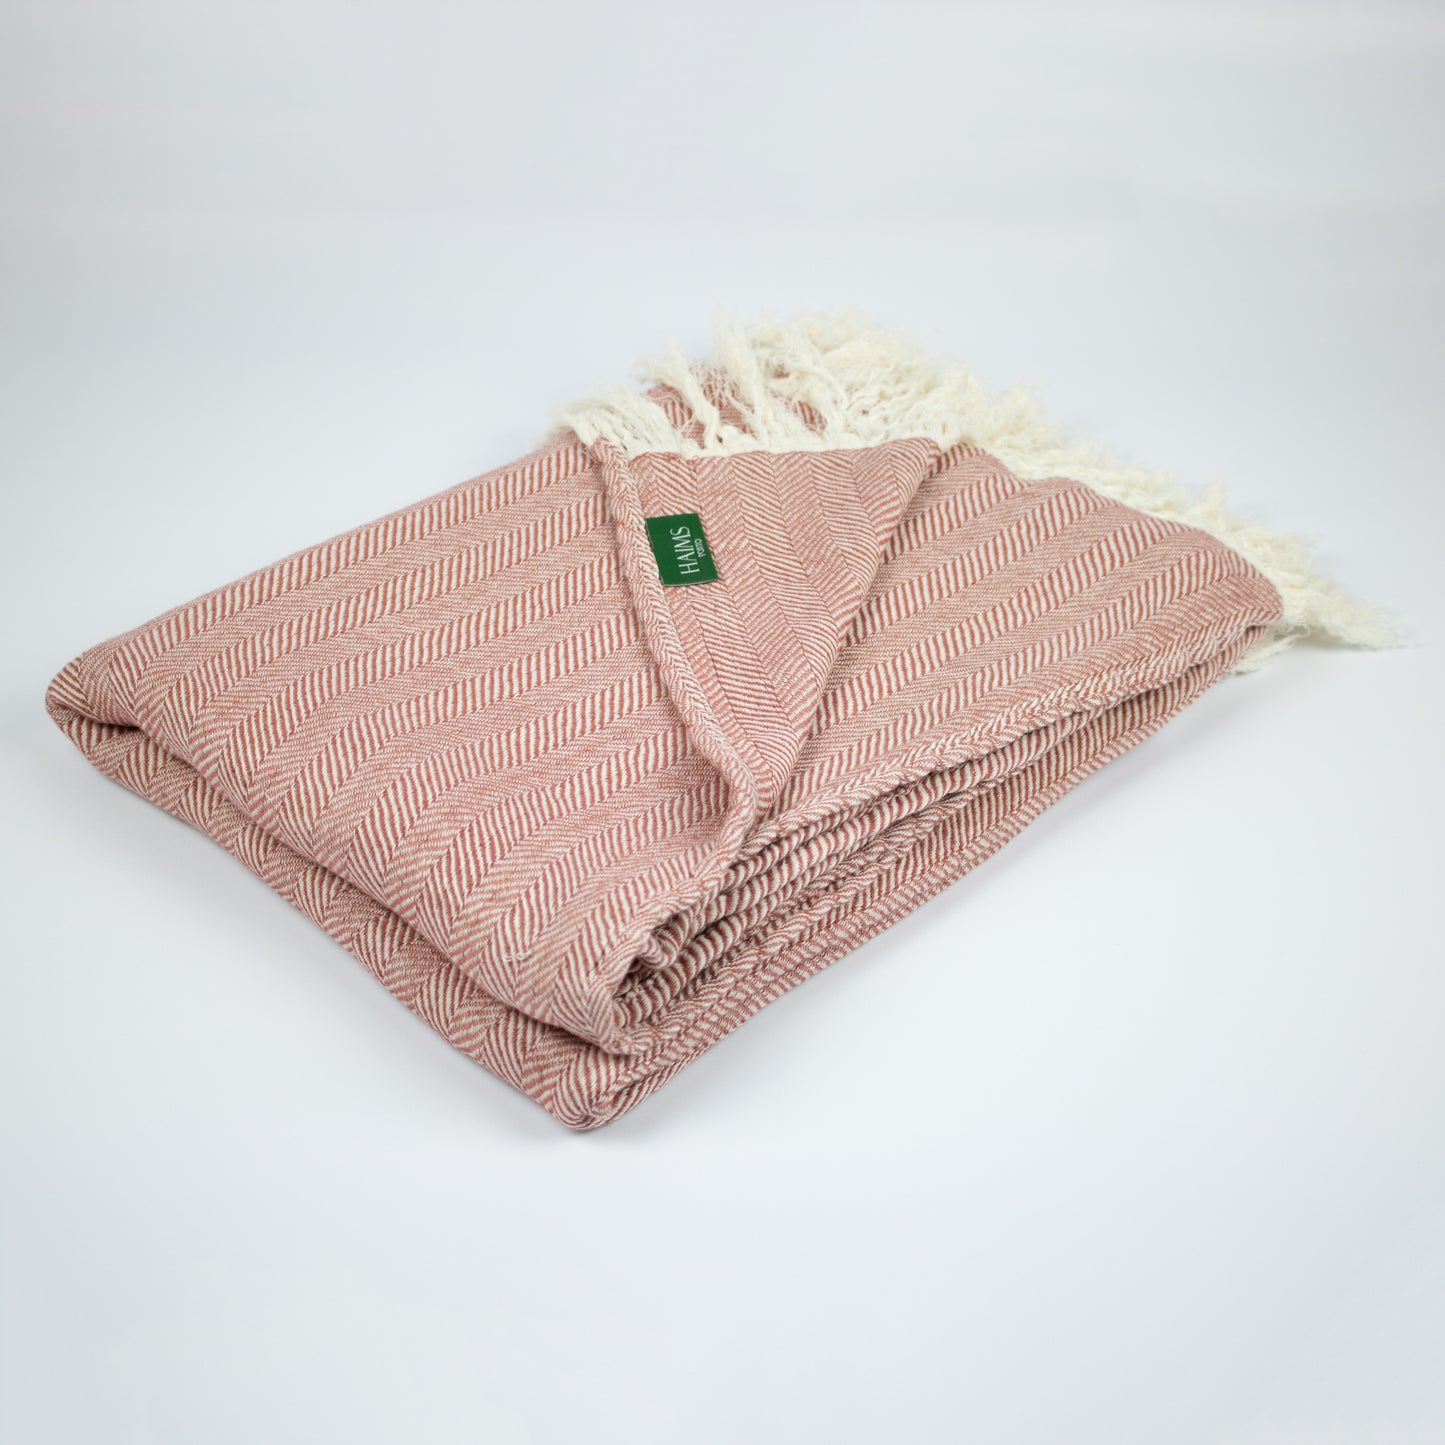 Baumwolldecke mit feinem Fischgrätmuster - vielseitig und kuschelig